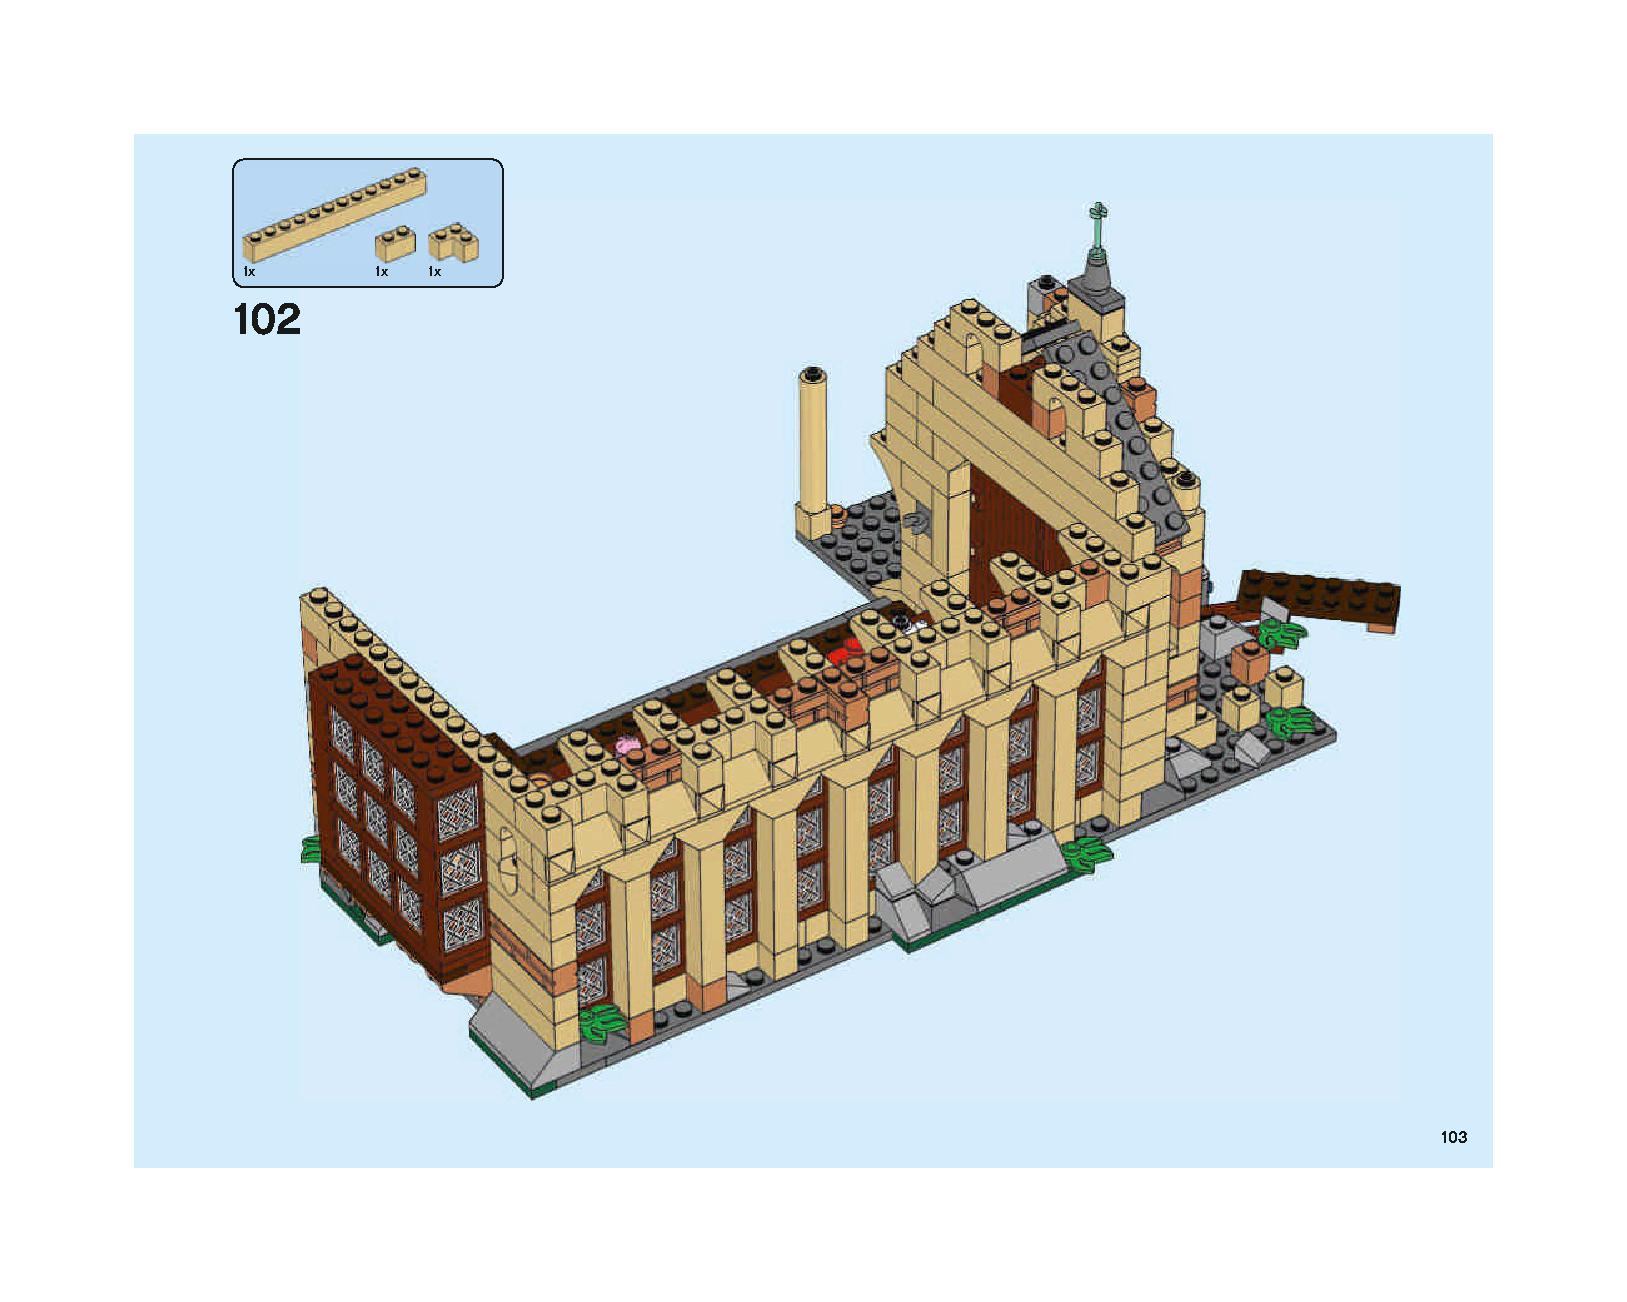 ホグワーツの大広間 75954 レゴの商品情報 レゴの説明書・組立方法 103 page